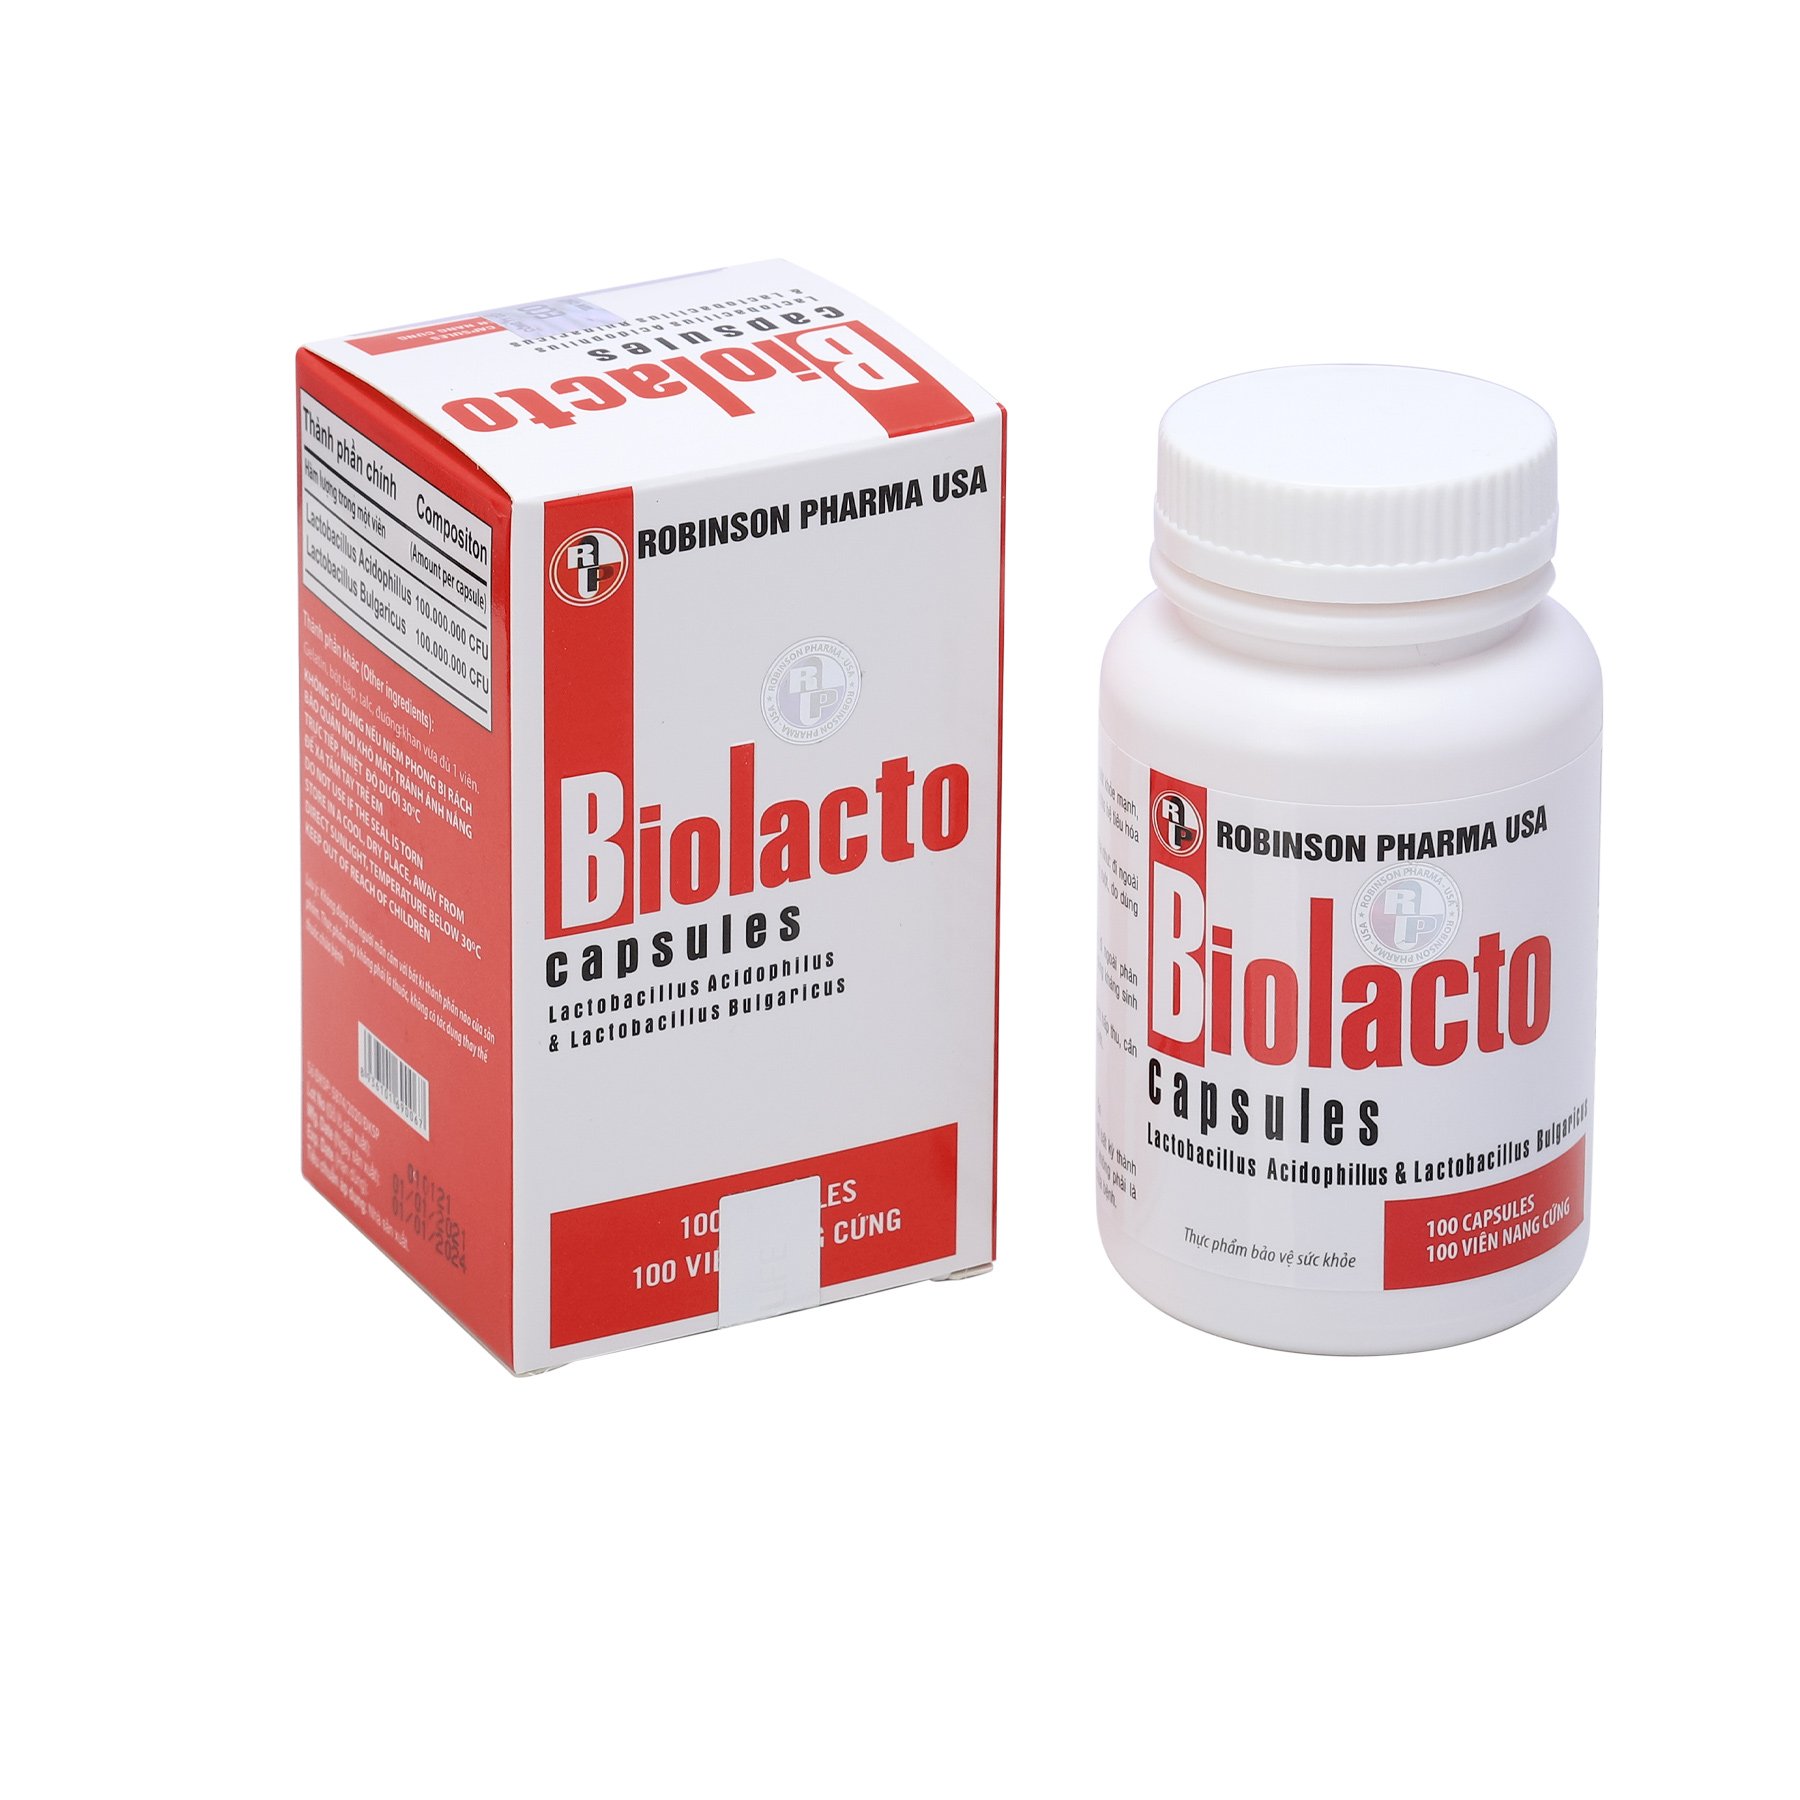 Viên uống TPCN BIOLACTO bổ sung vi khuẩn có lợi giúp cân bằng hệ vi sinh đường ruột,kích thích tăng cường tiêu hoá,hỗ trợ rối loạn tiêu hoá-chai 100 viên